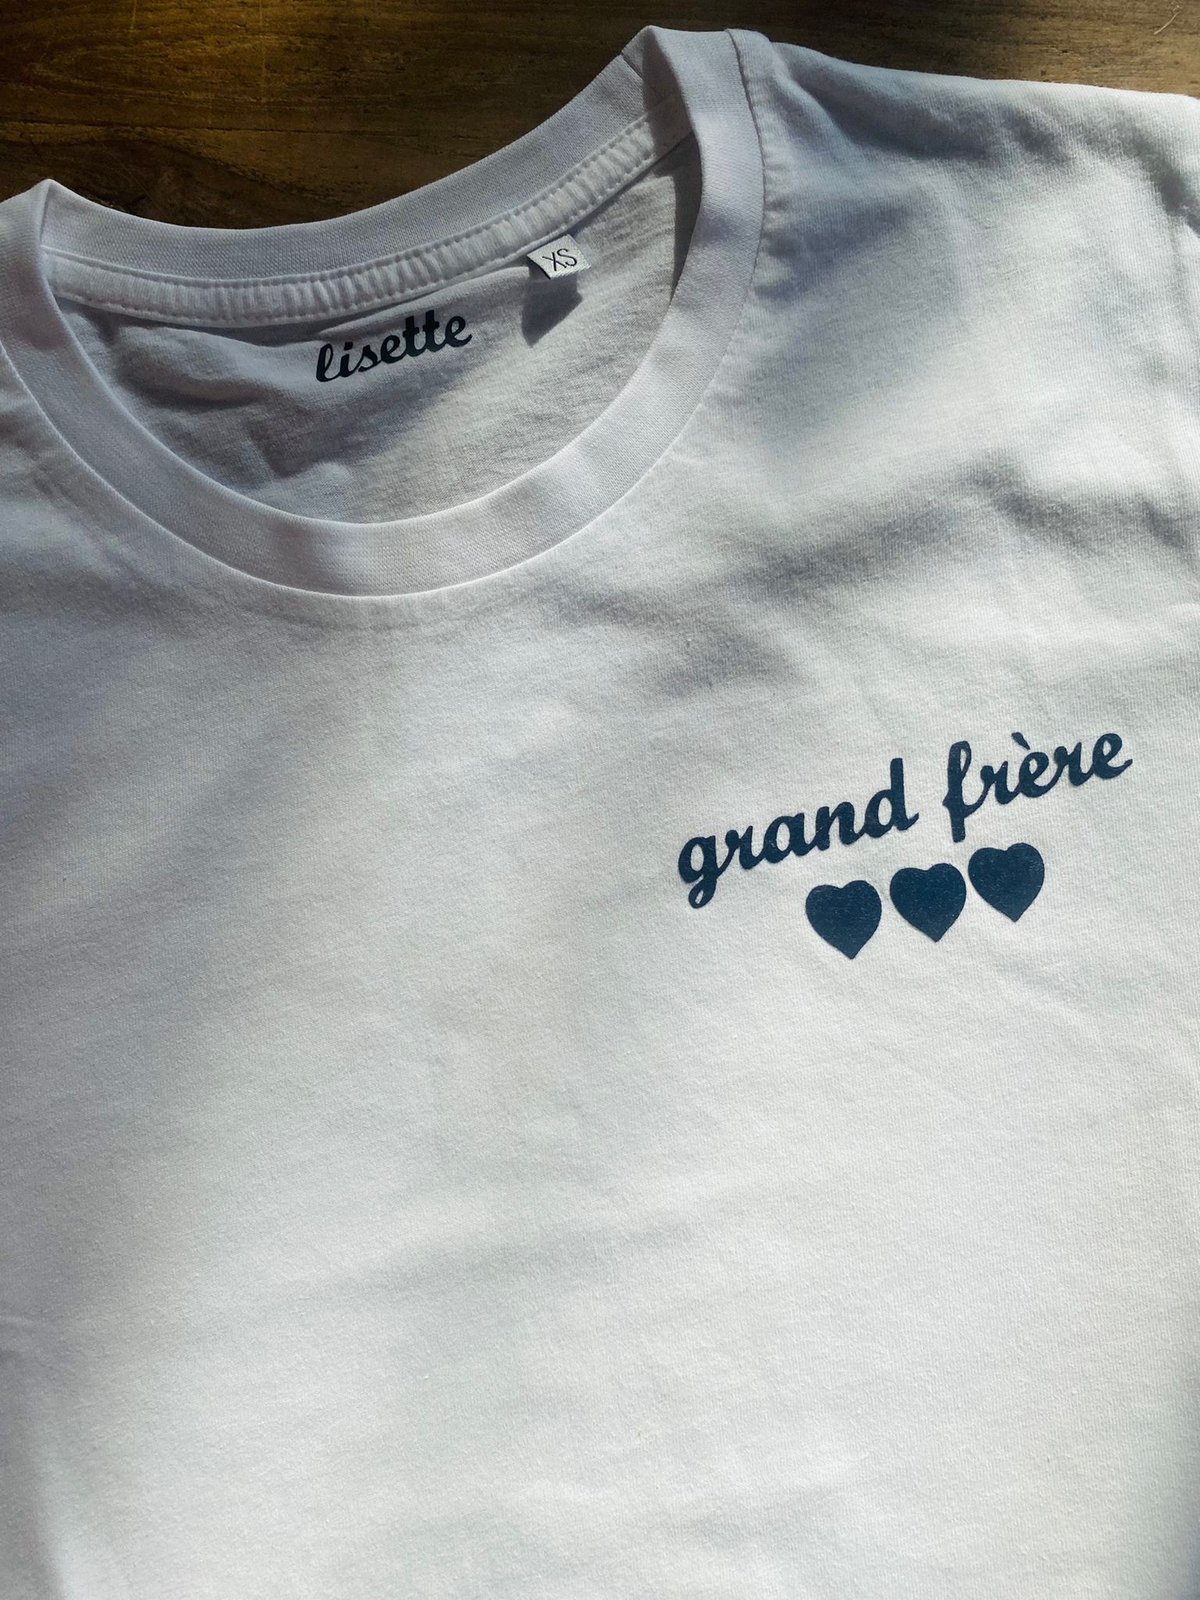 Image of Tee-shirt grand frÃ¨re ðŸ’™ðŸ’™ðŸ’™